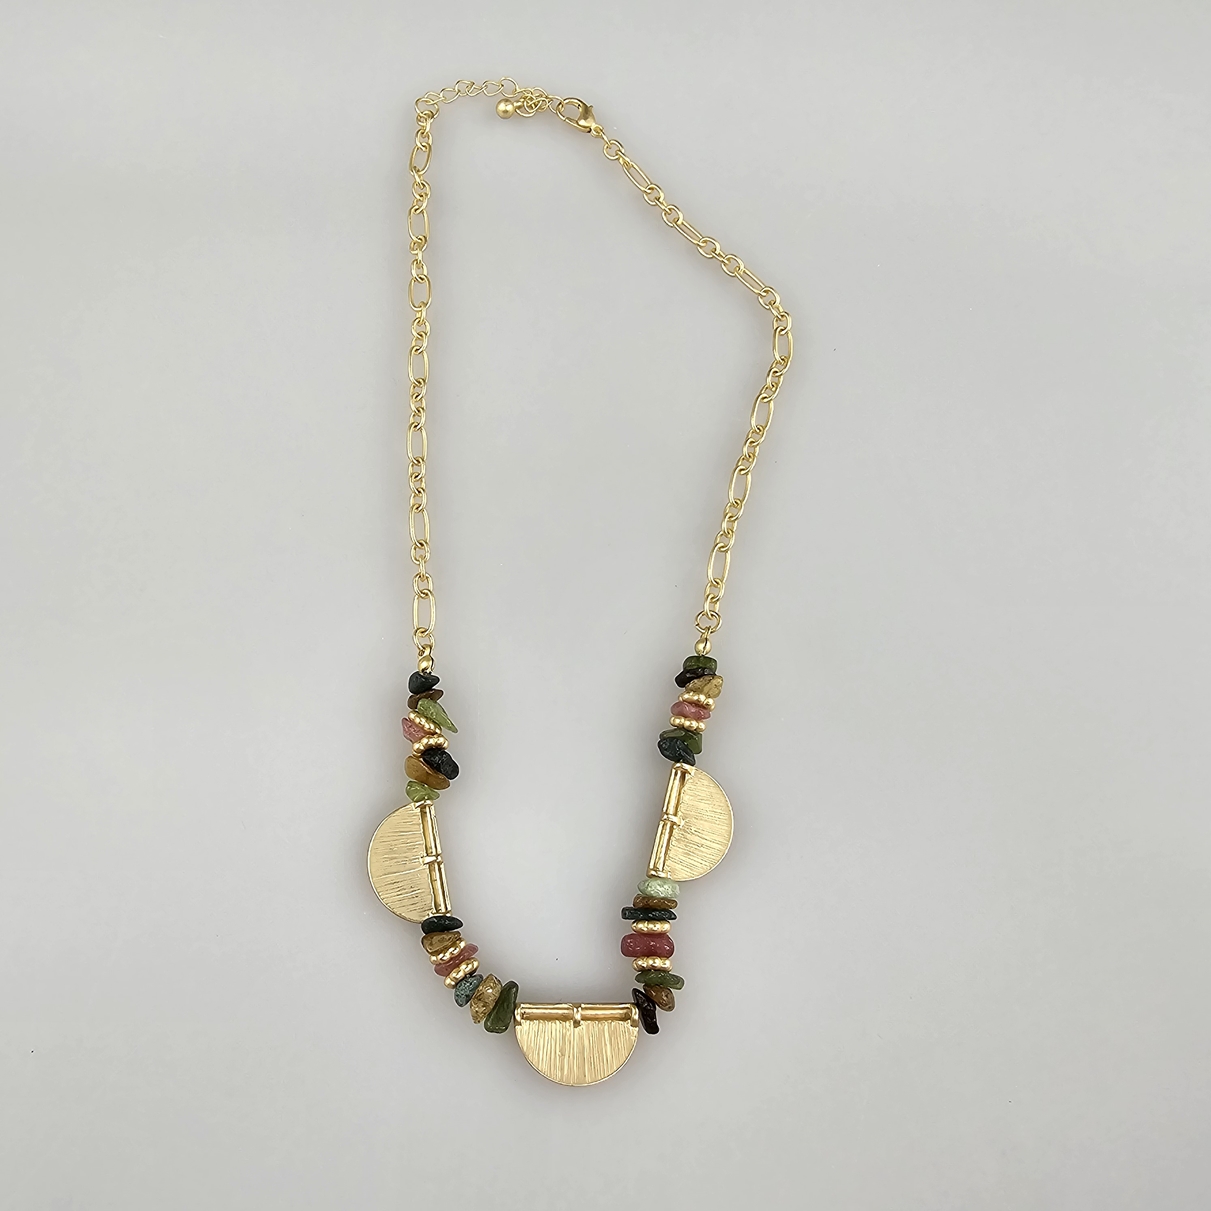 Zierliches Vintage-Collier mit kubistischen Stilelementen - Gelbmetall, Mittelteil aus drei Halbmon - Image 6 of 6